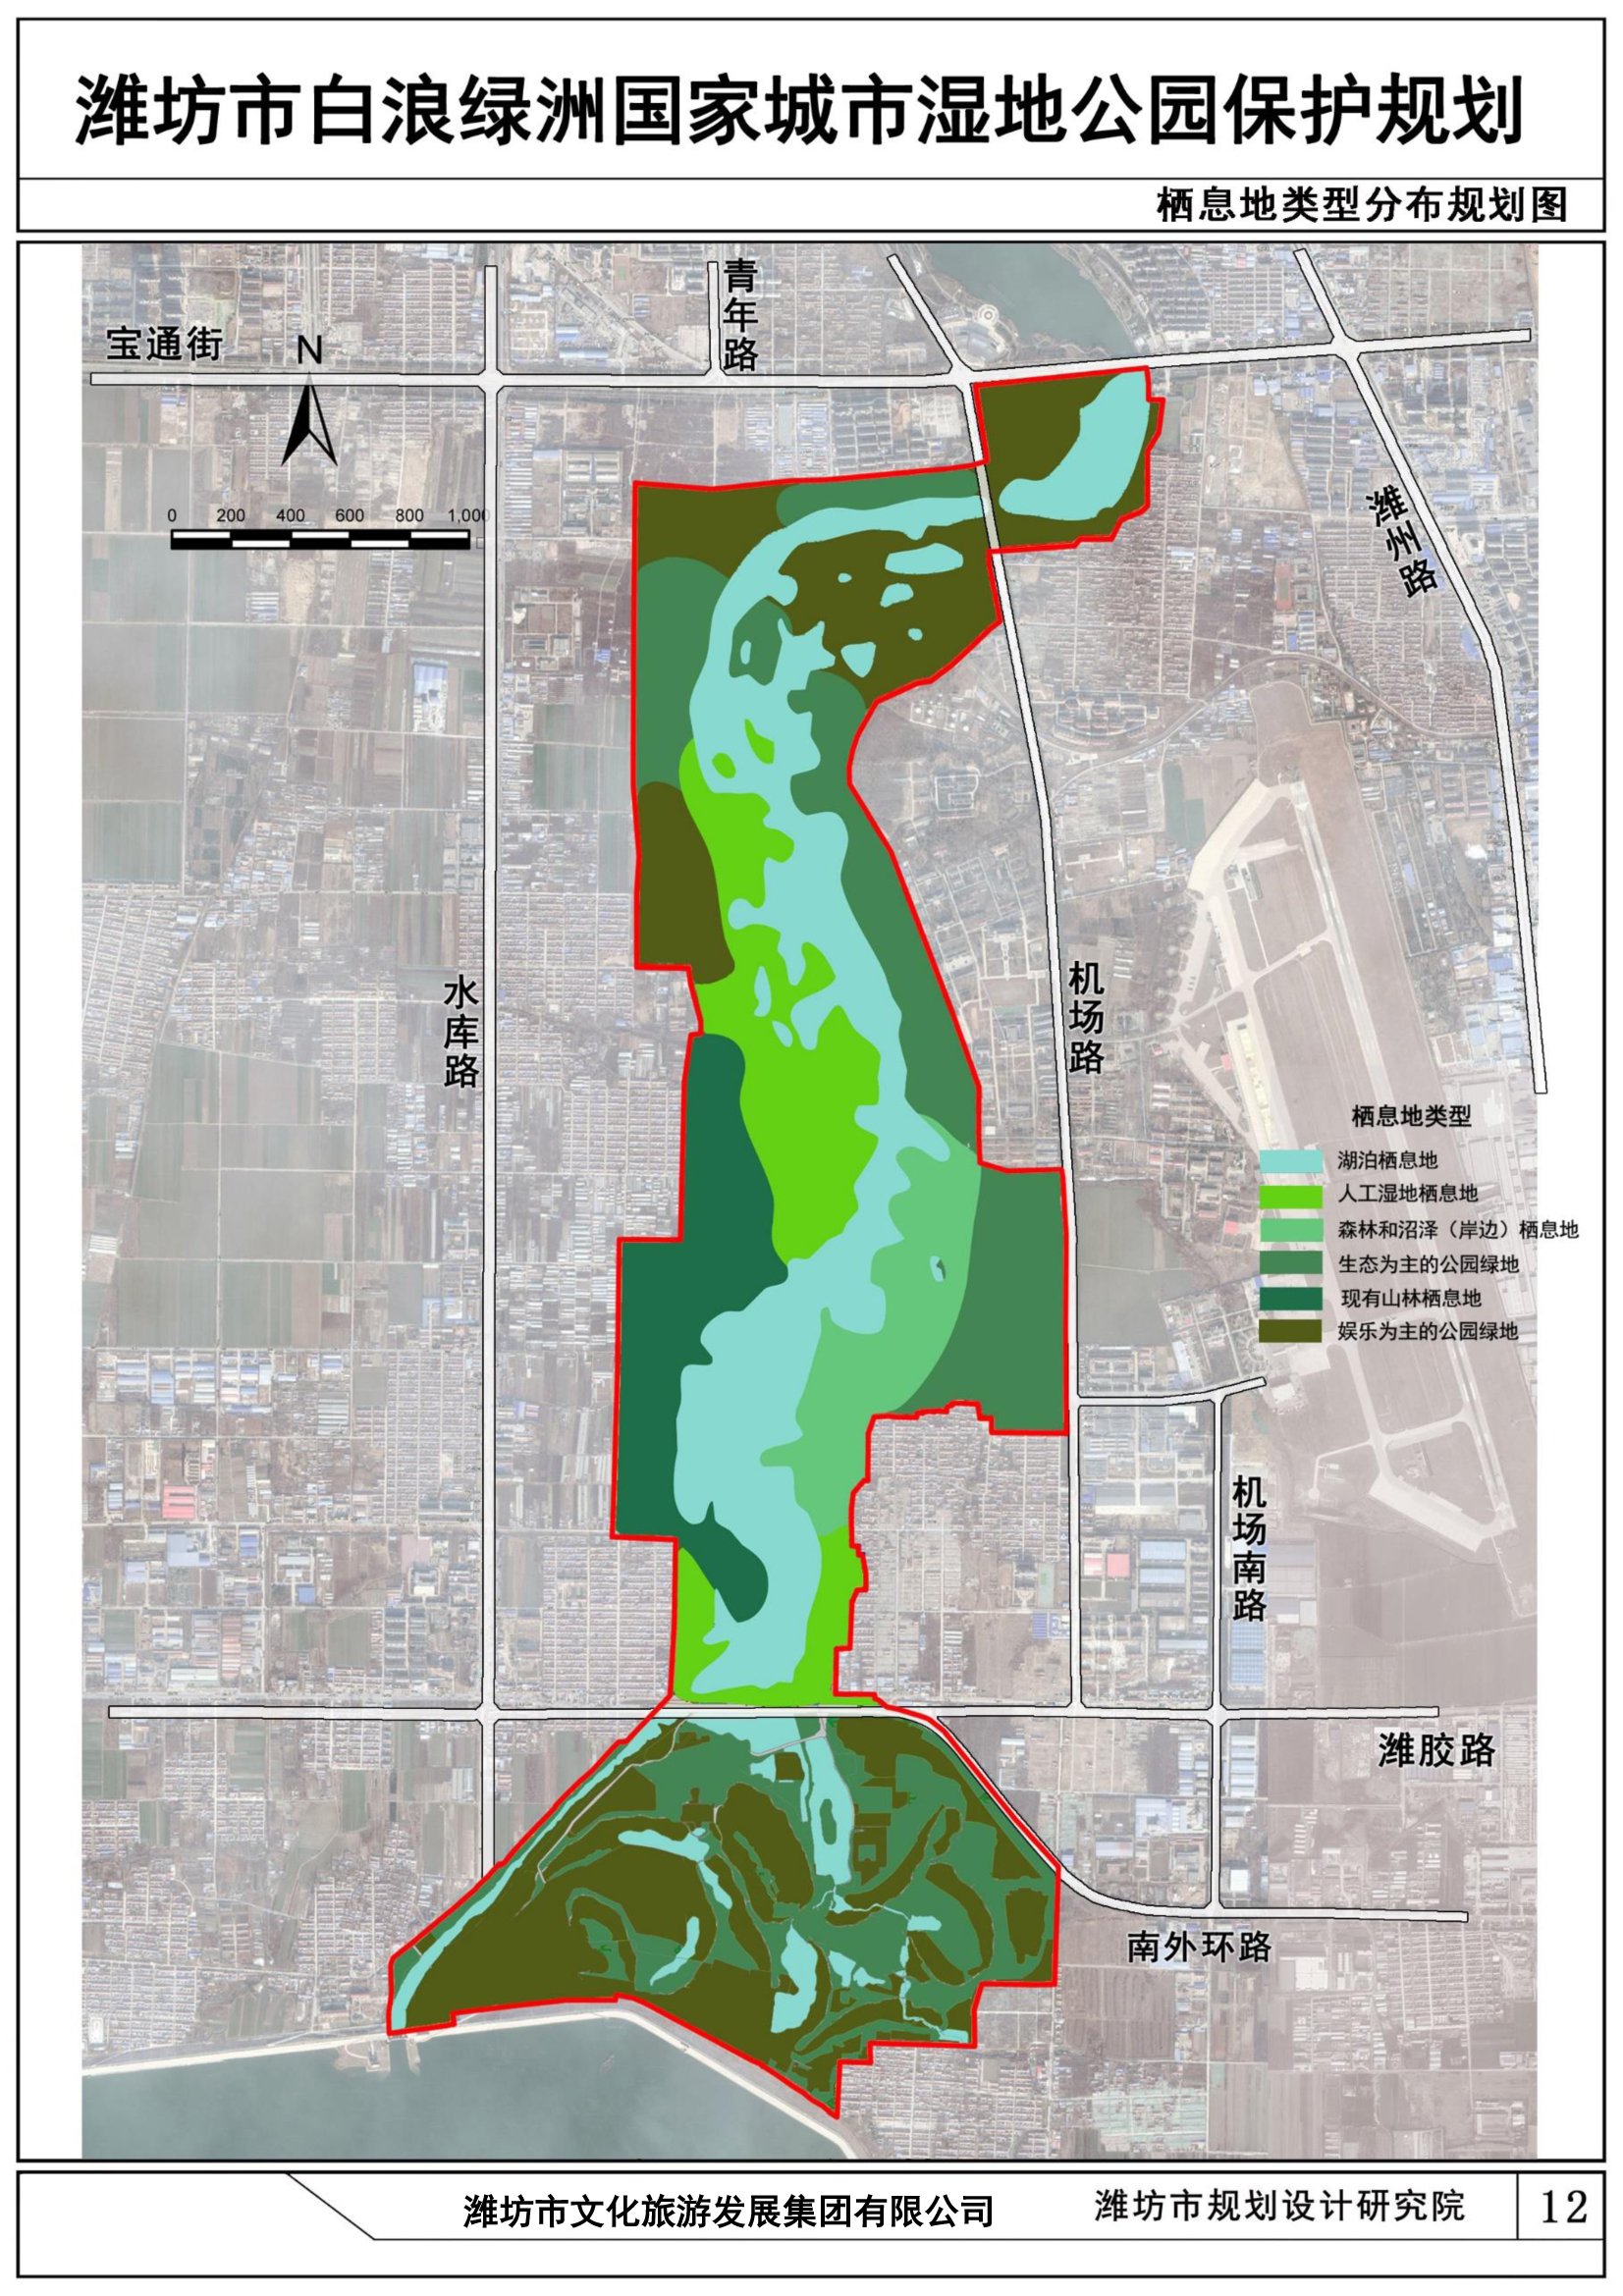 濰坊市白浪綠洲國家城市濕地公園保護規劃規劃方案公示